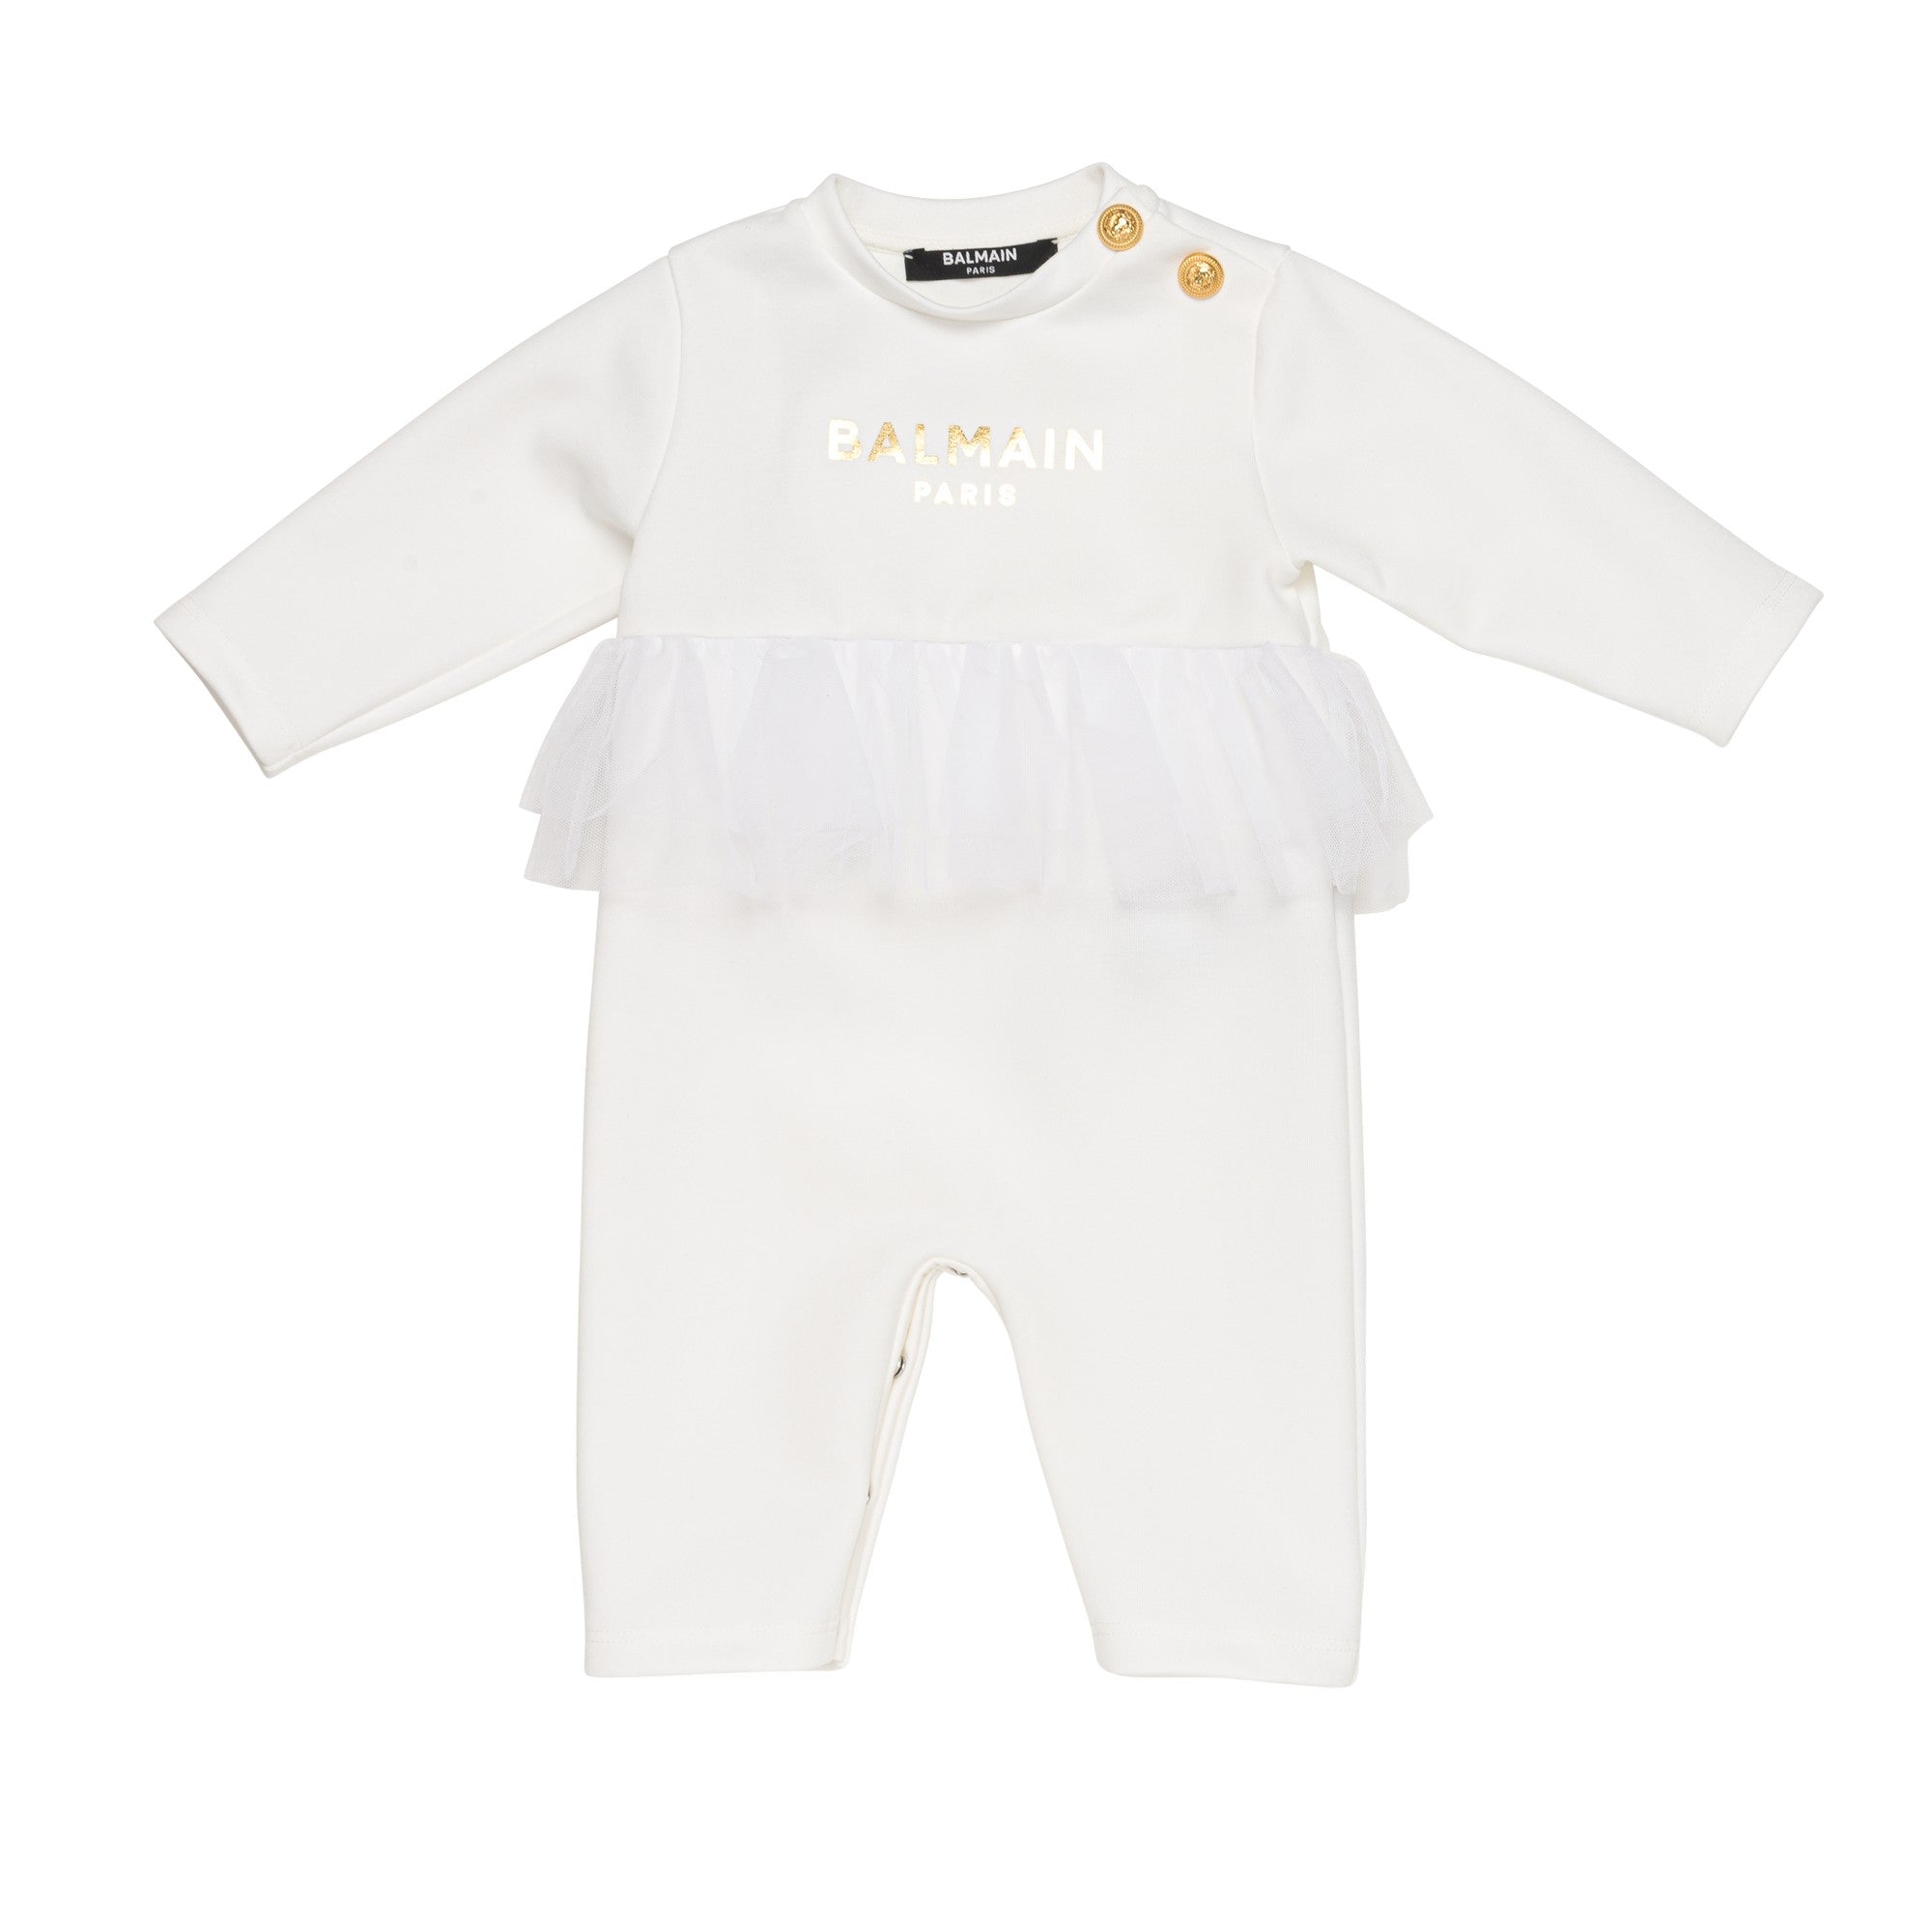 Leggings Balmain - White wool blend baby girl balmain leggings -  BT6080J0302102